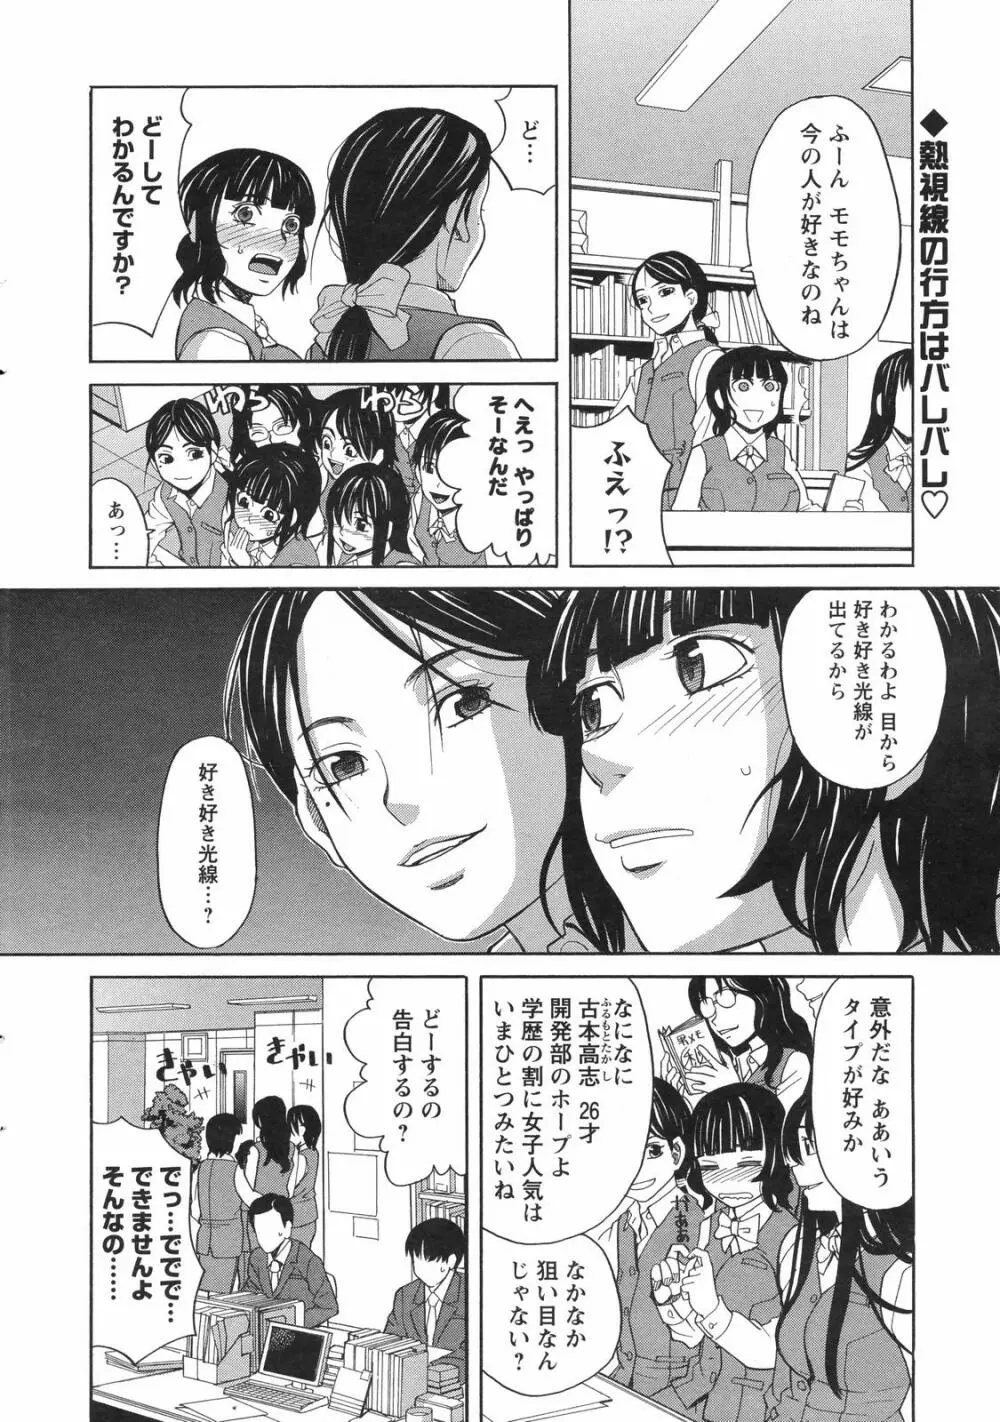 メンズヤングスペシャルIKAZUCHI雷 Vol.4 2007年12月号増刊 12ページ